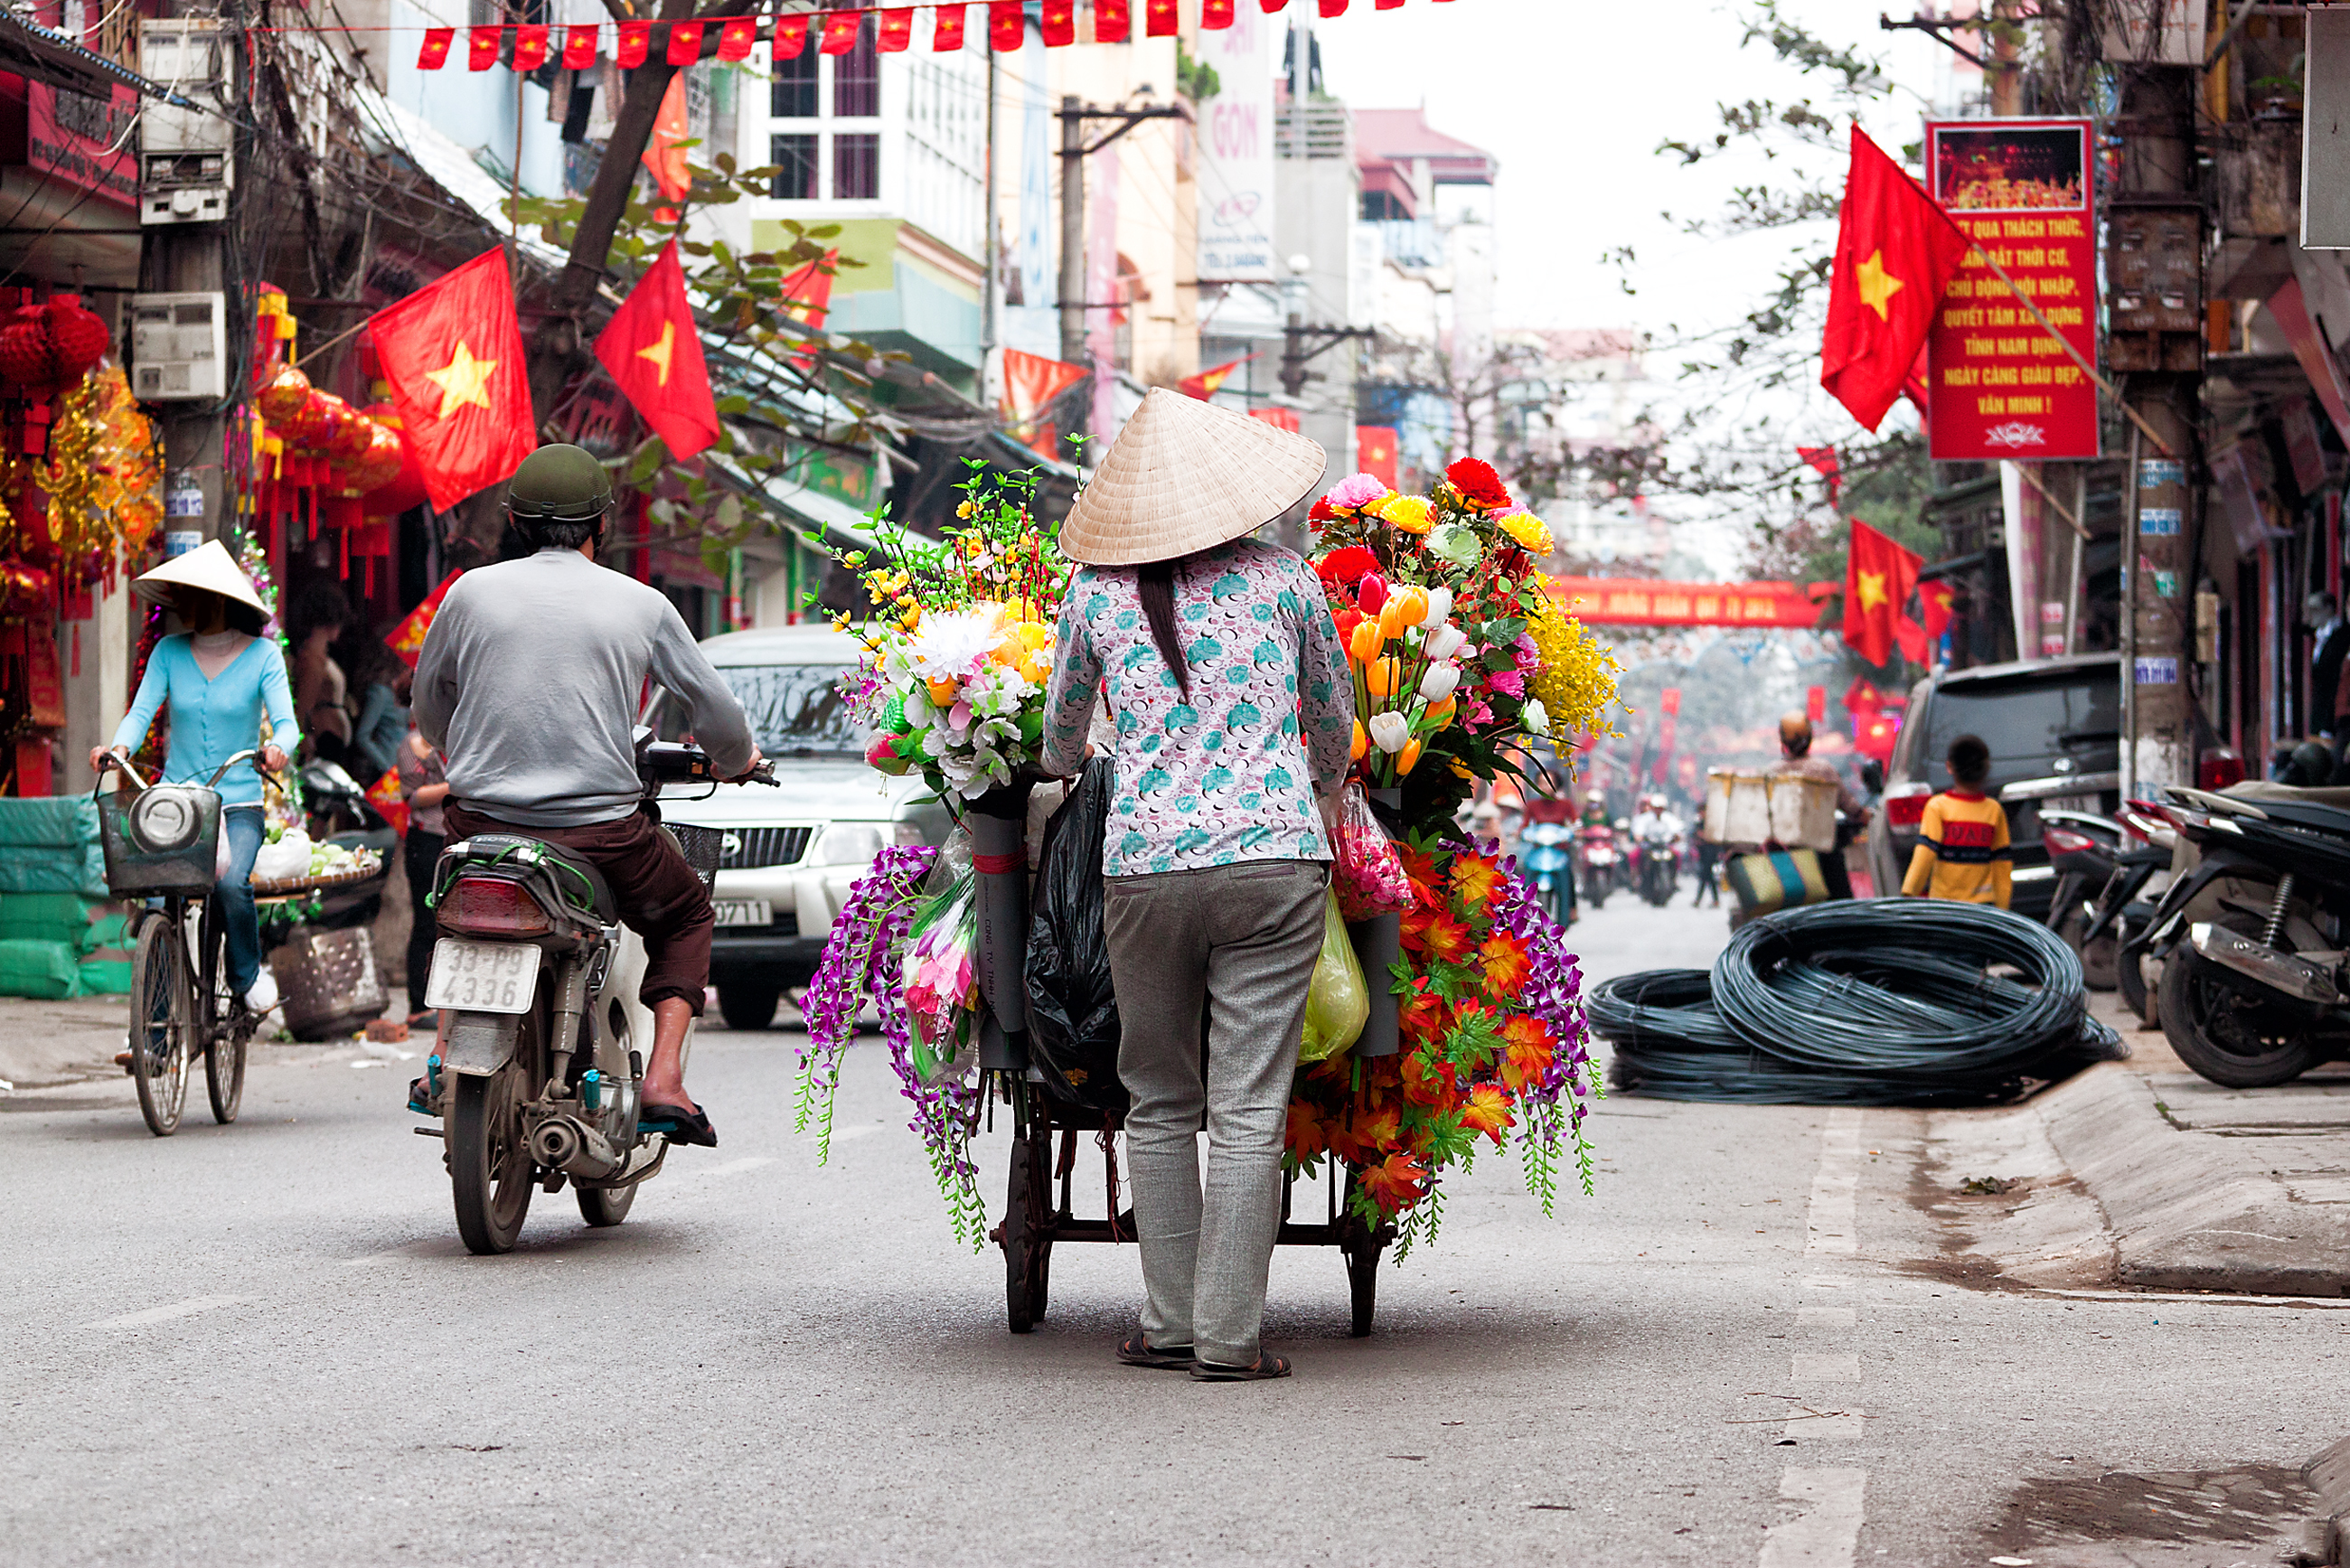 เวียดนาม…ตลาดในฝันท่ามกลางมรสุมที่ถาโถม